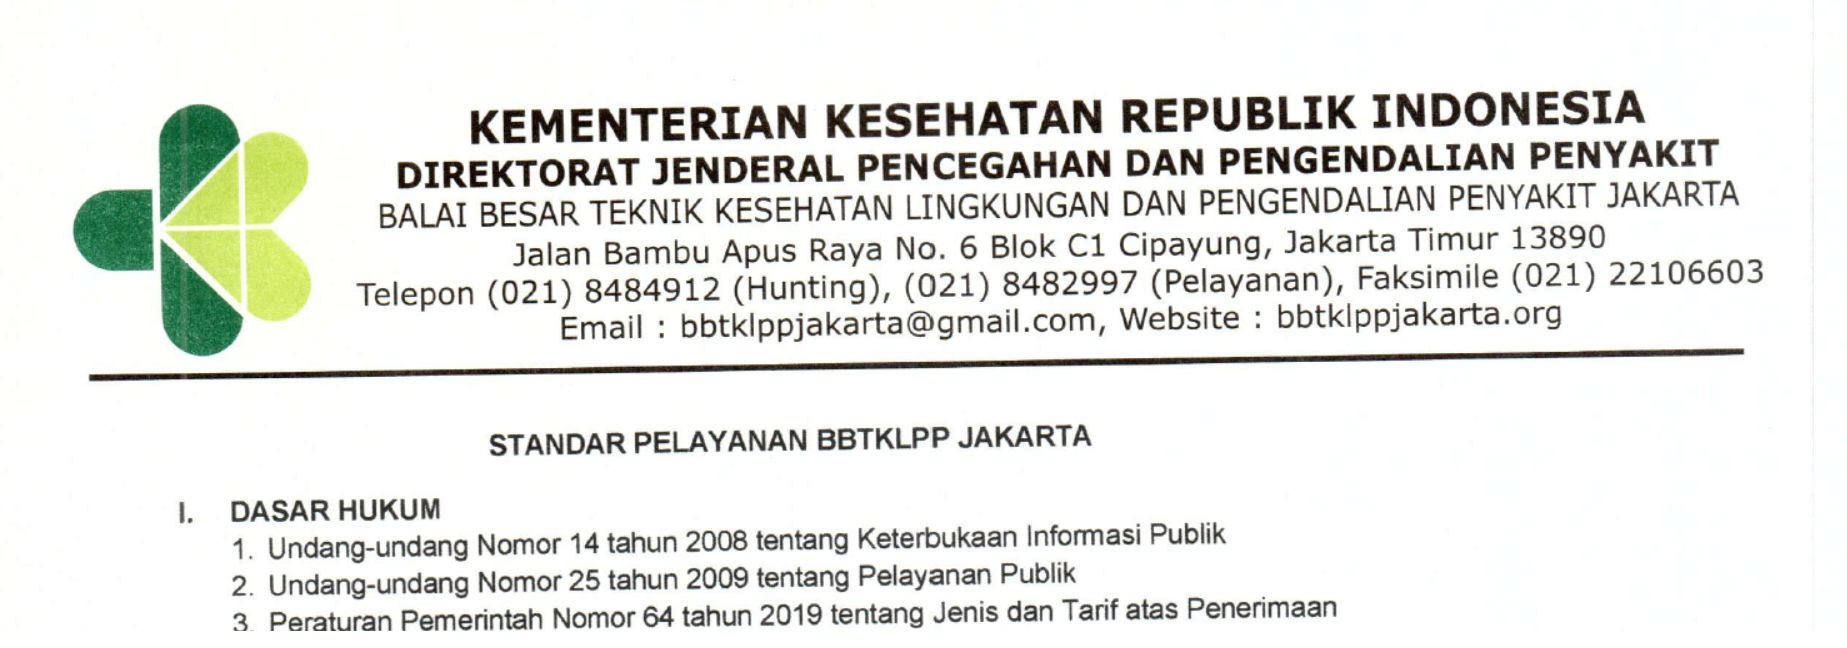 Standar Pelayanan BBTKLPP Jakarta 2021